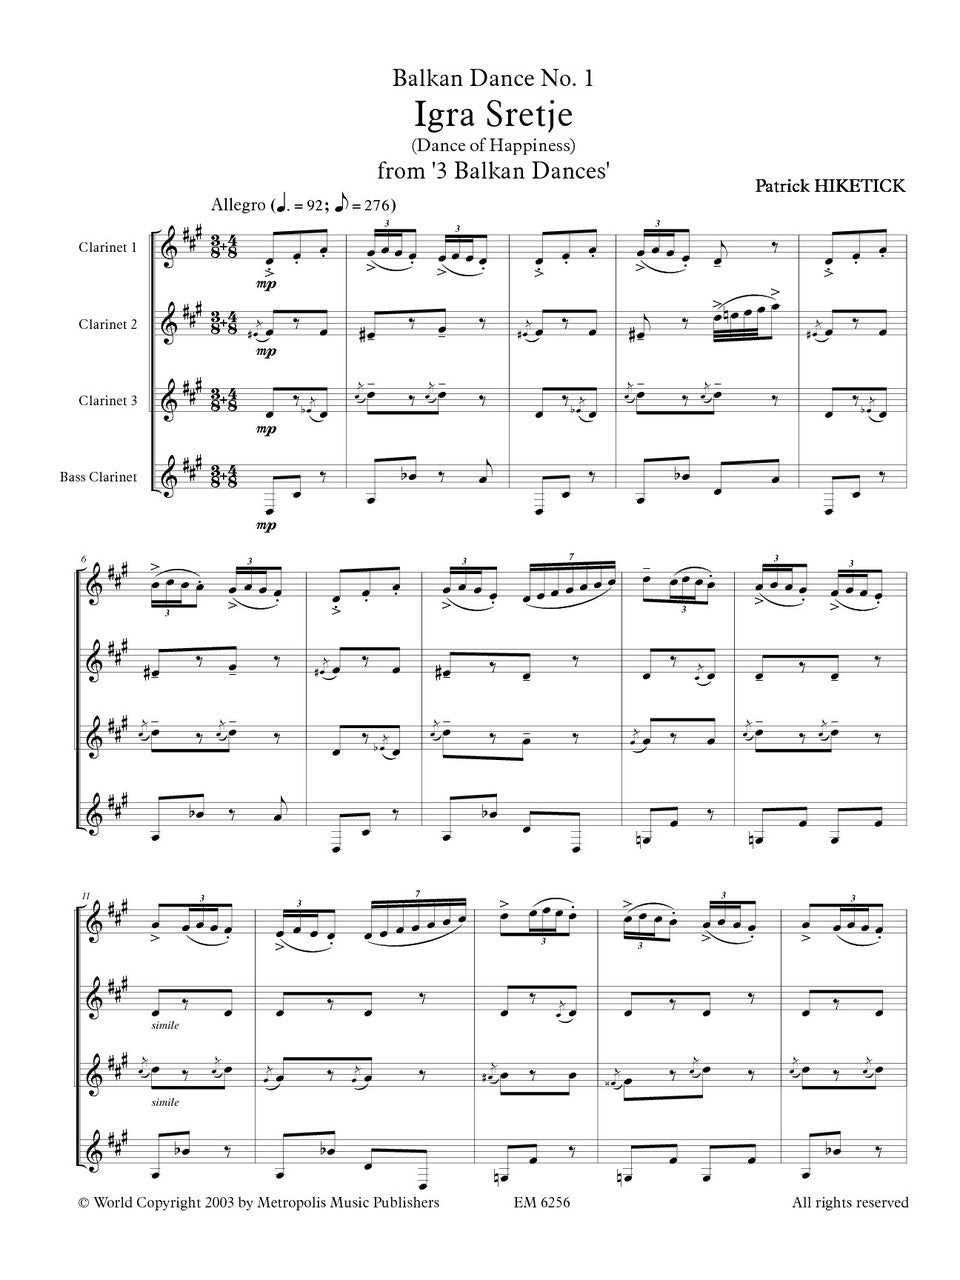 Hiketick - Balkan Dances no.1 (Igra Sretje) for Clarinet Quartet